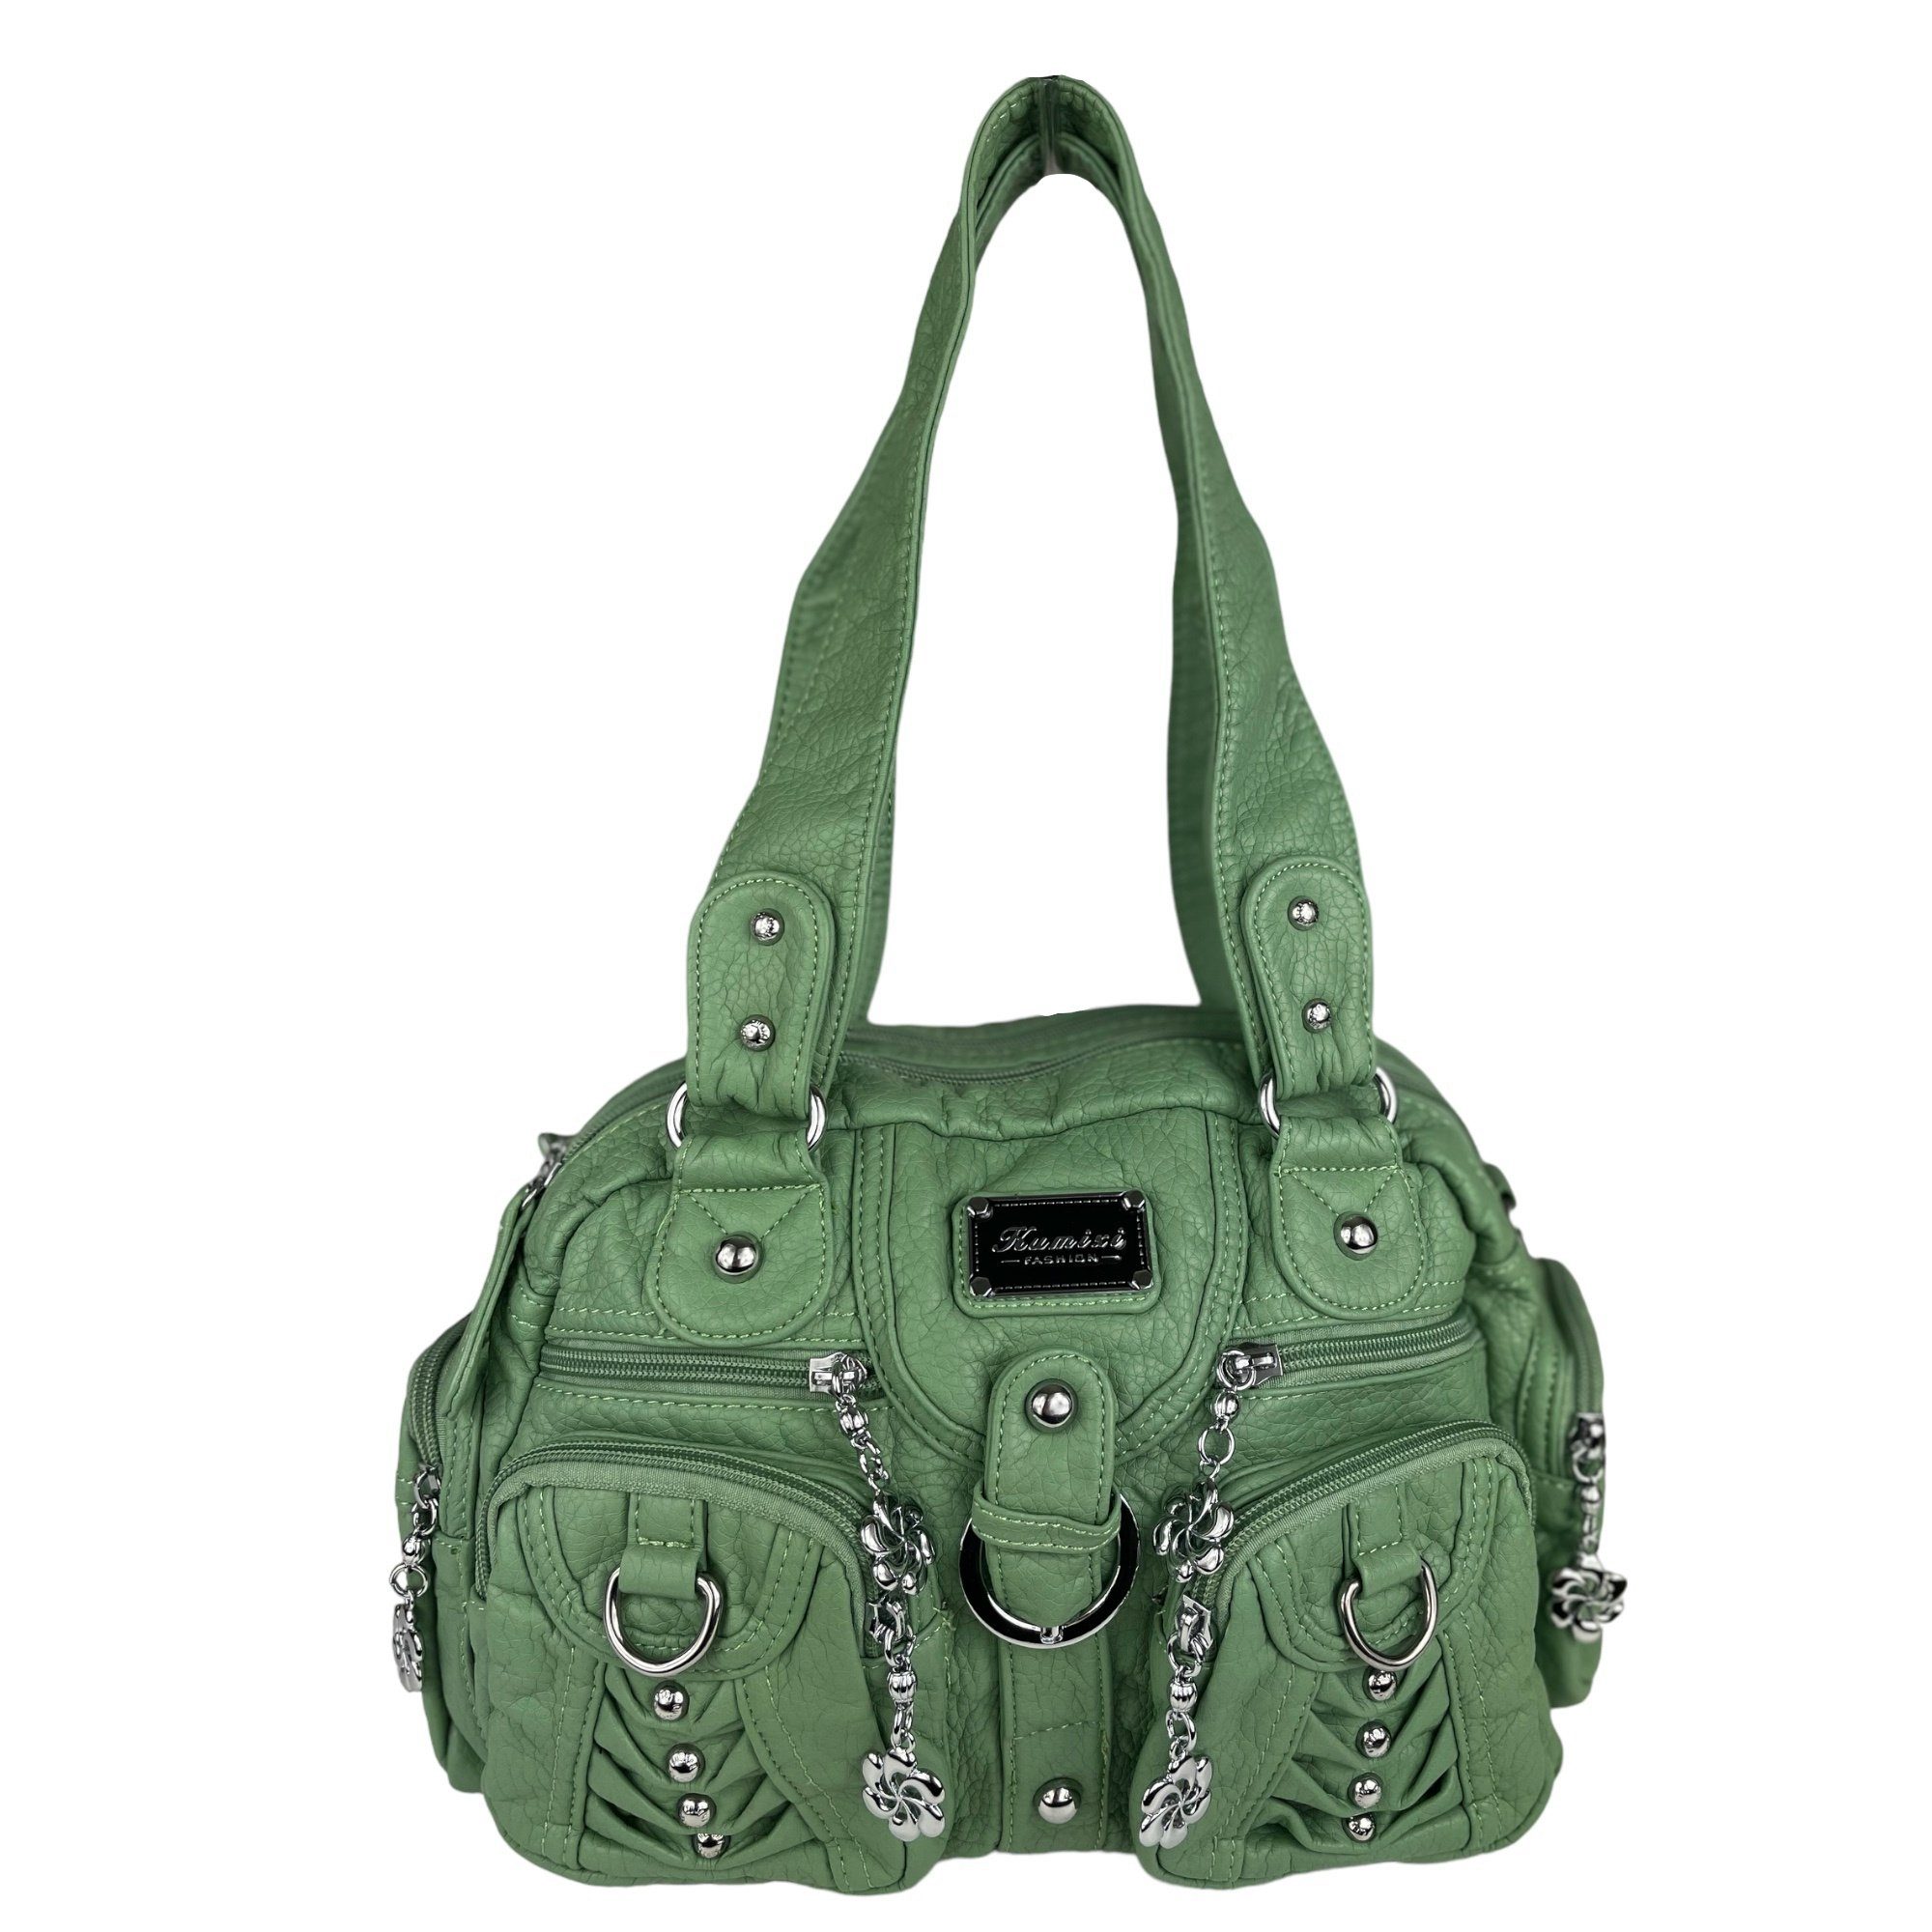 Taschen4life Schultertasche klassische Damen Handtasche (Schultertasche) mit Nieten AKW22032, viele Fächer, verstellbarer abnehmbarer Schulterriemen lindgrün